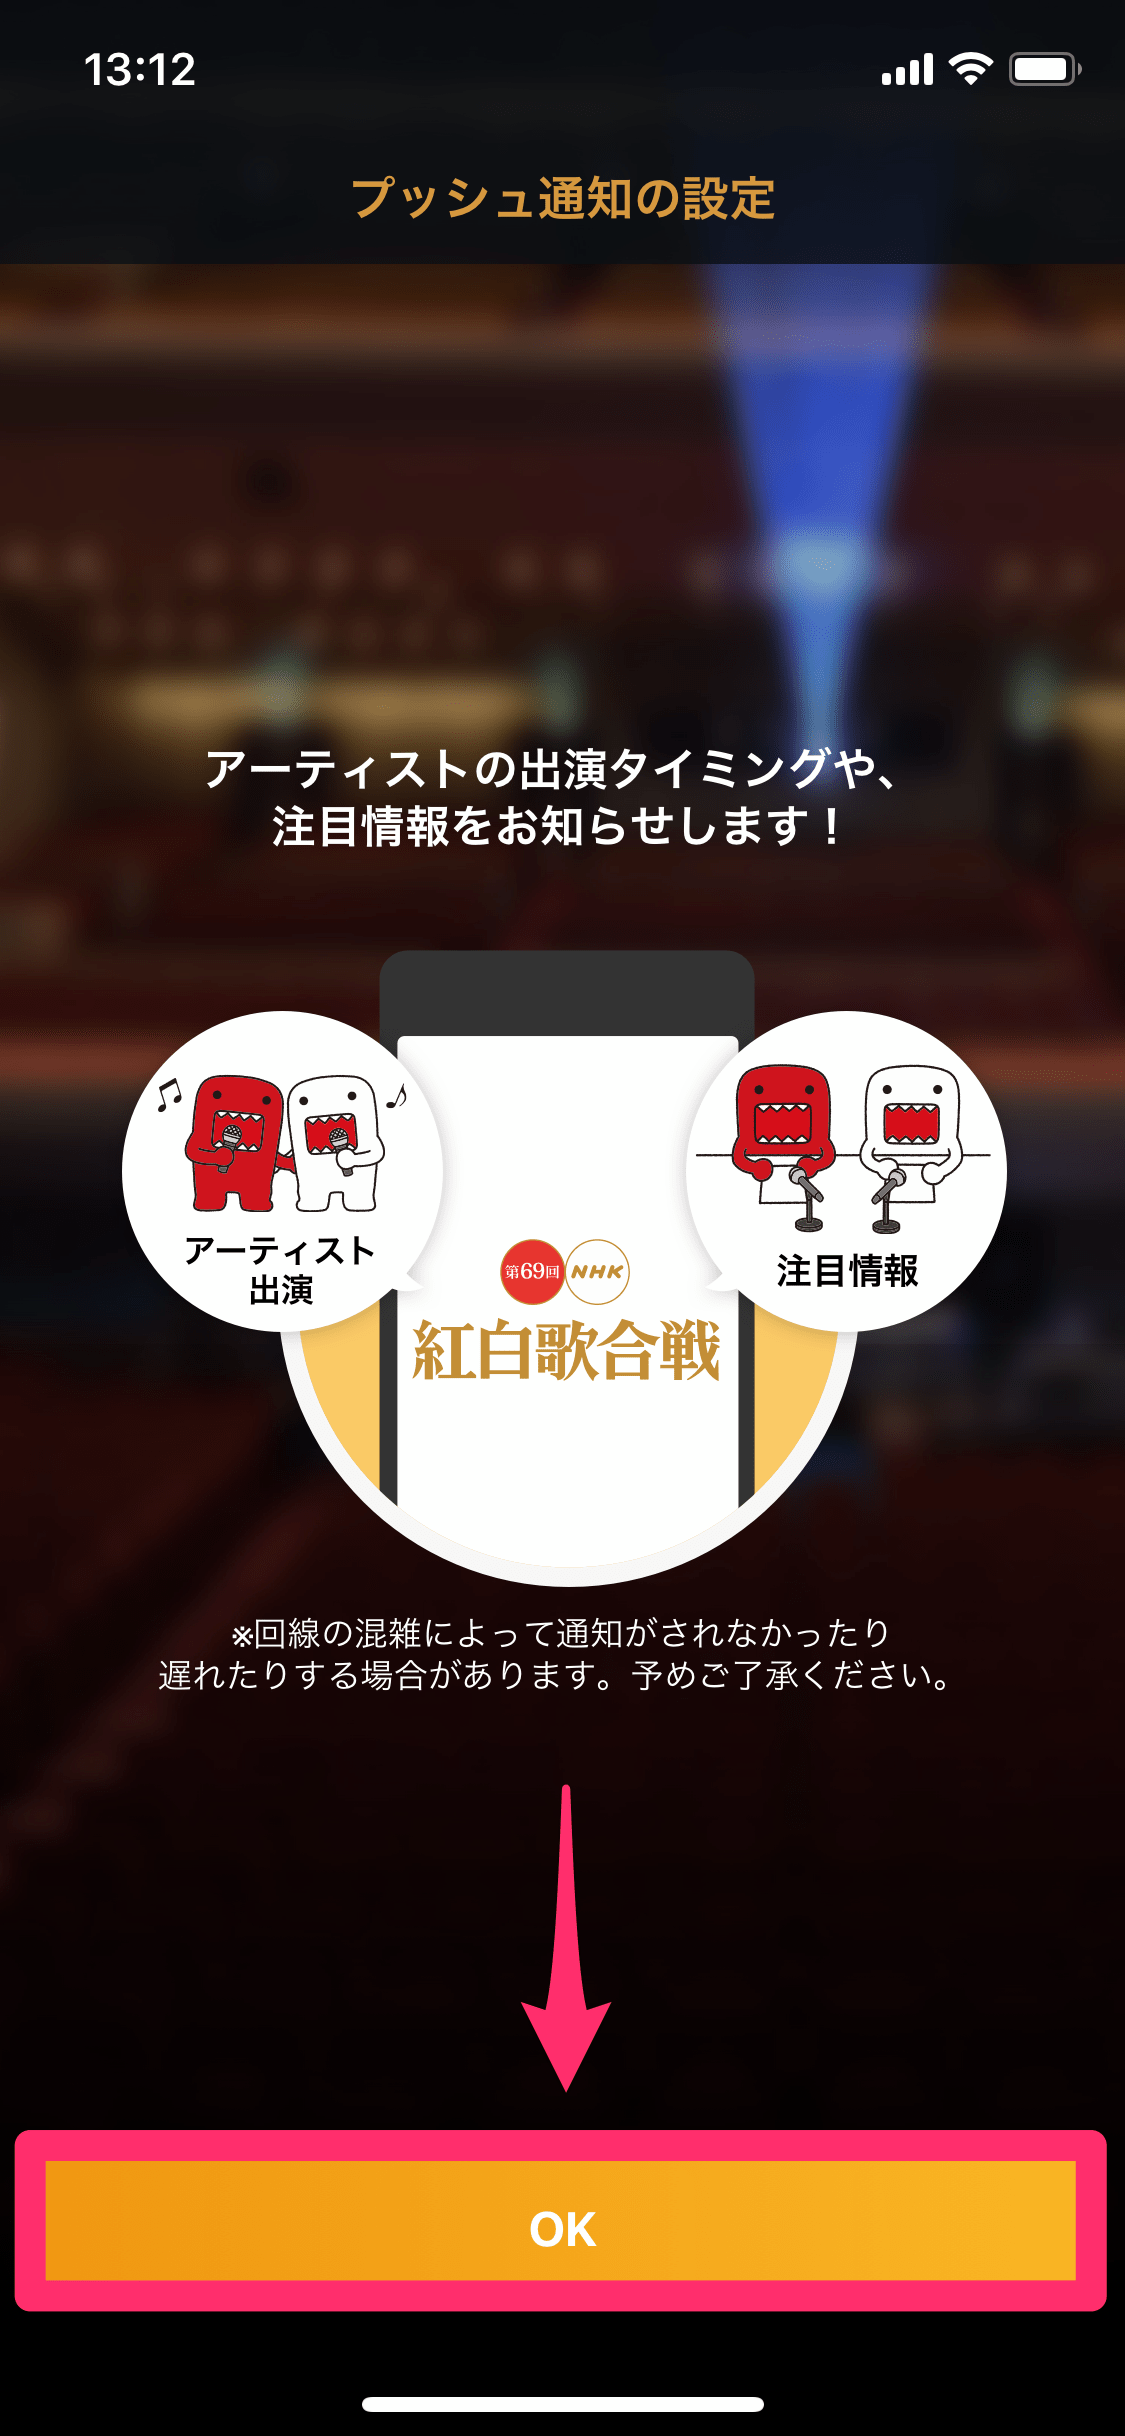 「NHK紅白」アプリ（2018年版）